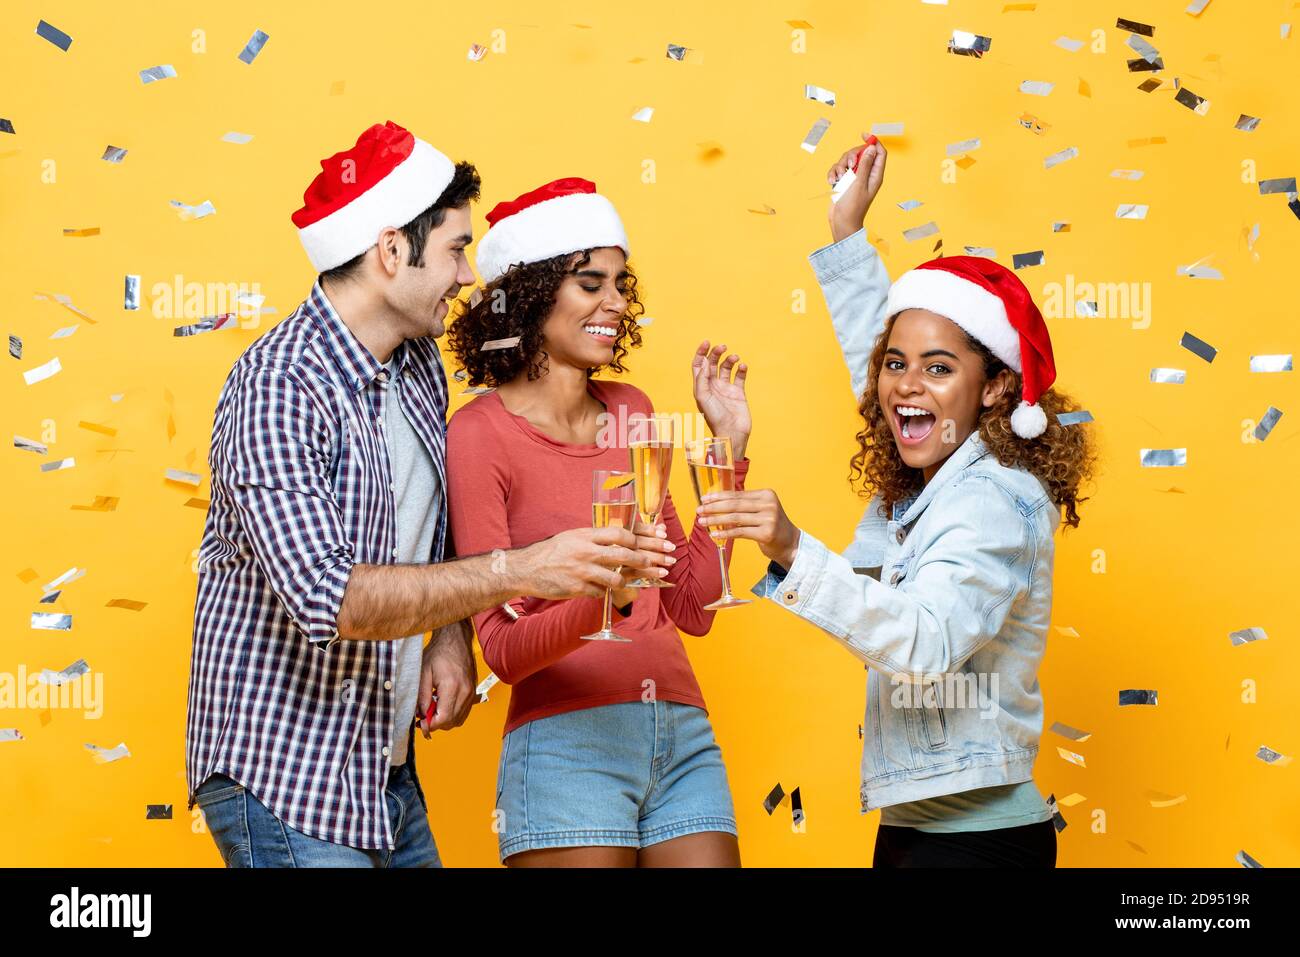 Grupo de amigos diversos bebiendo champán celebrando la Navidad en amarillo fondo de estudio de color con confeti Foto de stock